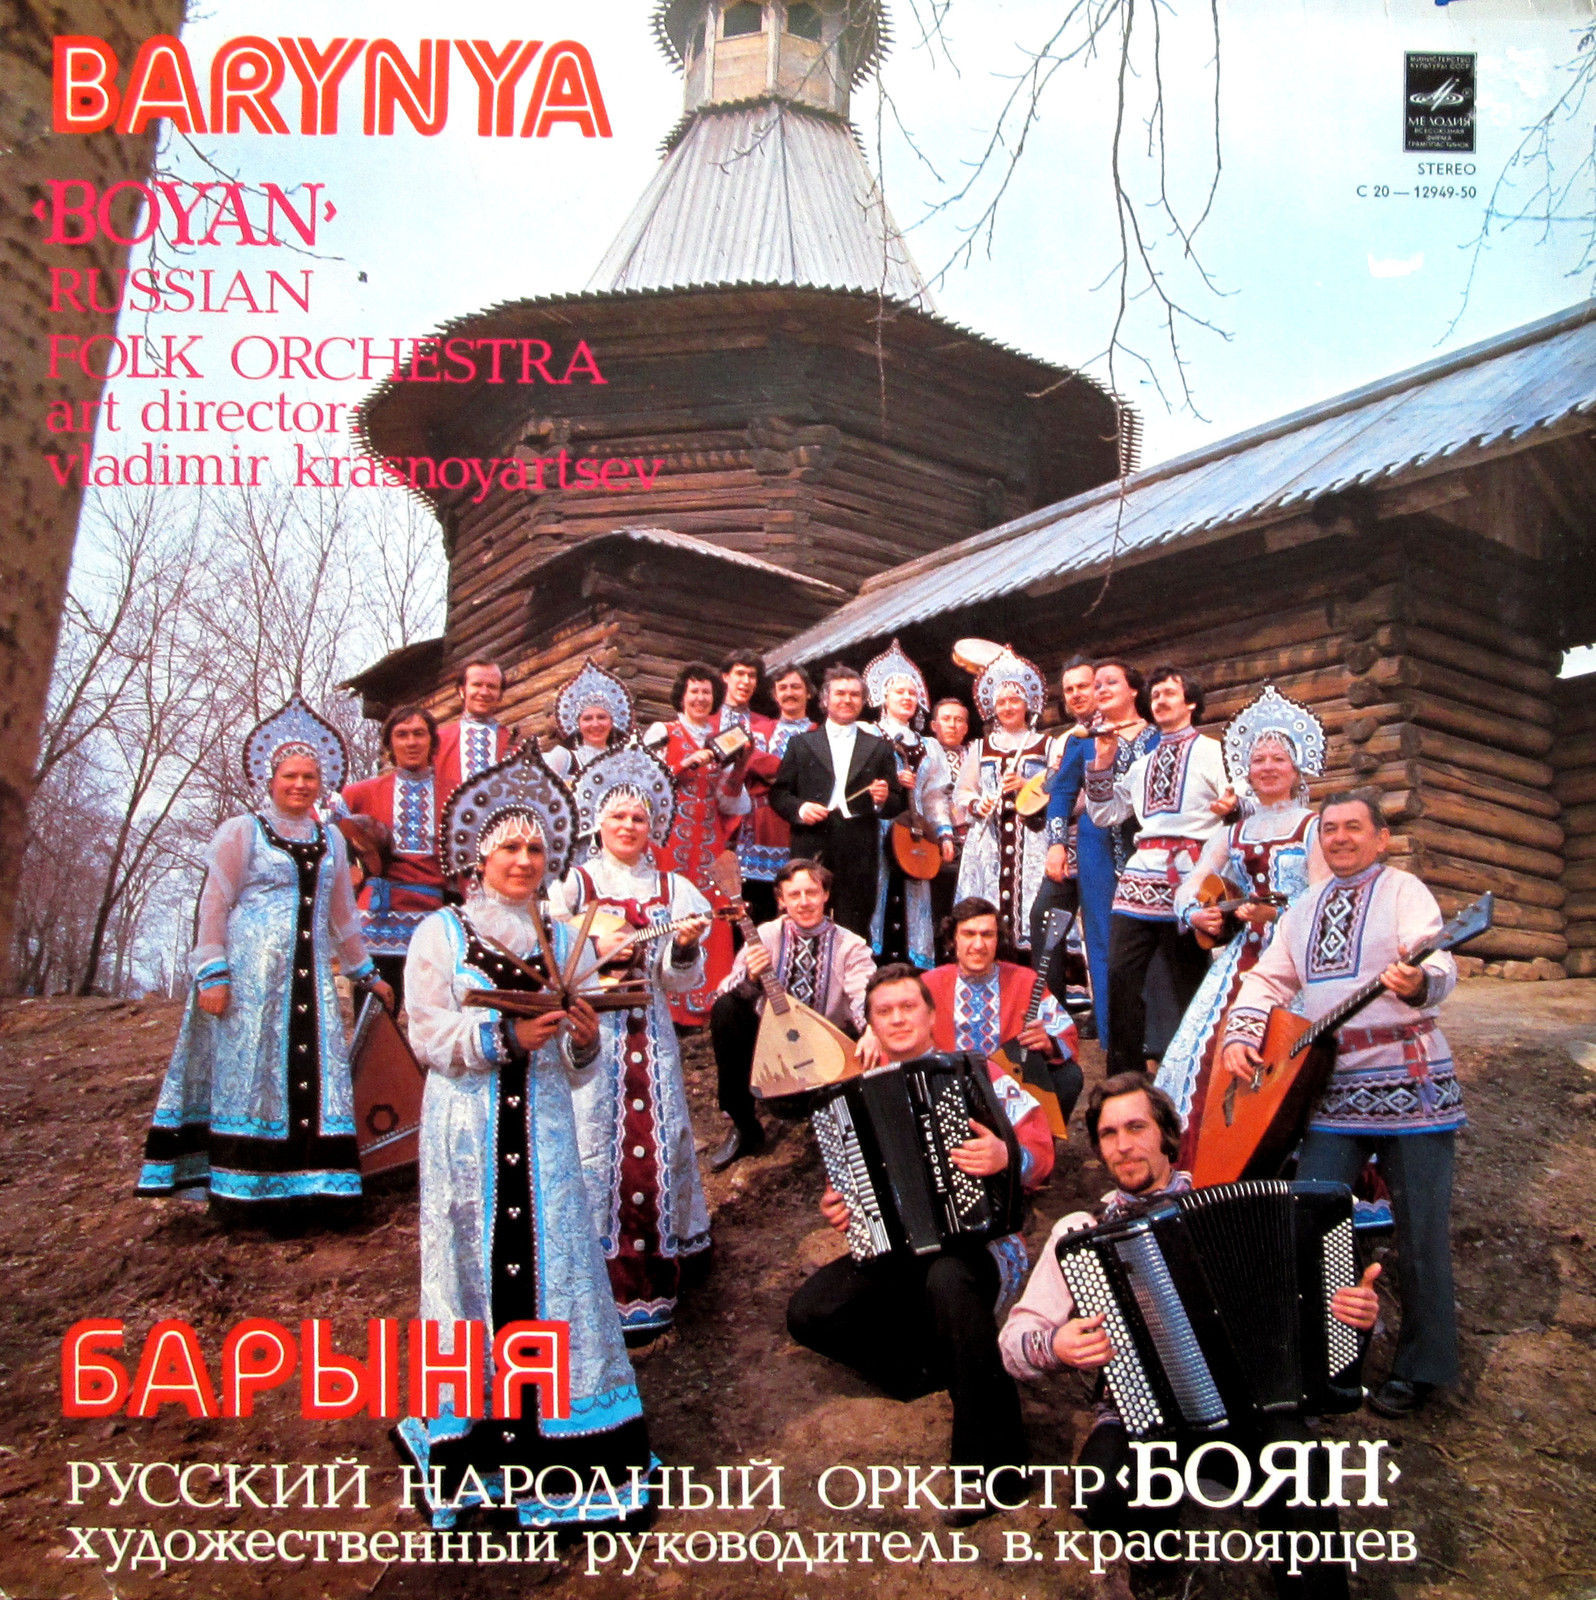 Русский народный оркестр «Боян». «Барыня»